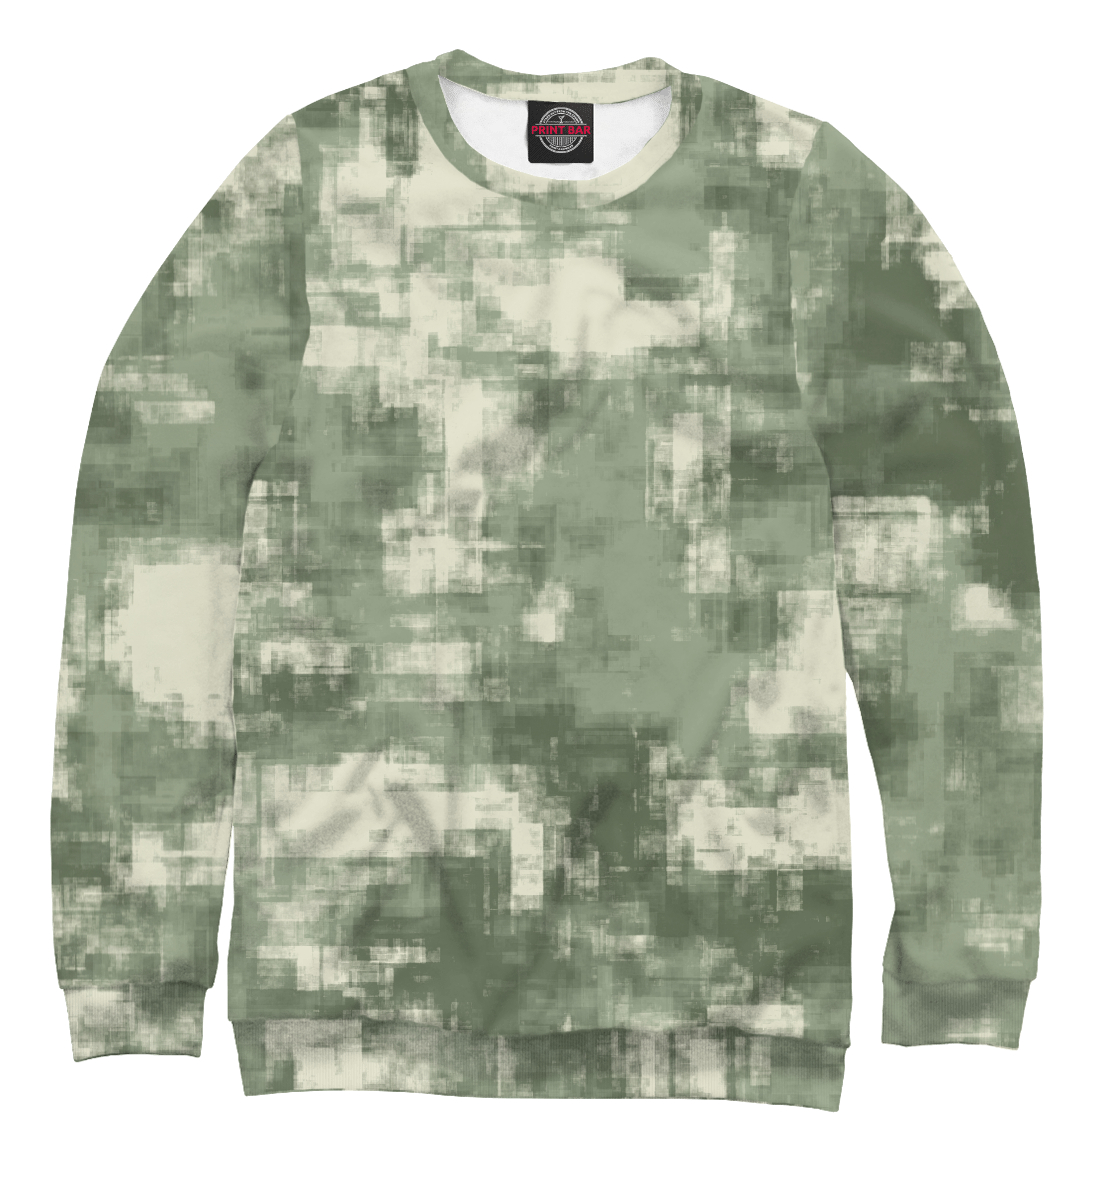 Мужской Свитшот Военный камуфляж- одежда для мужчин и женщин, артикул CMF-442561-swi-2mp